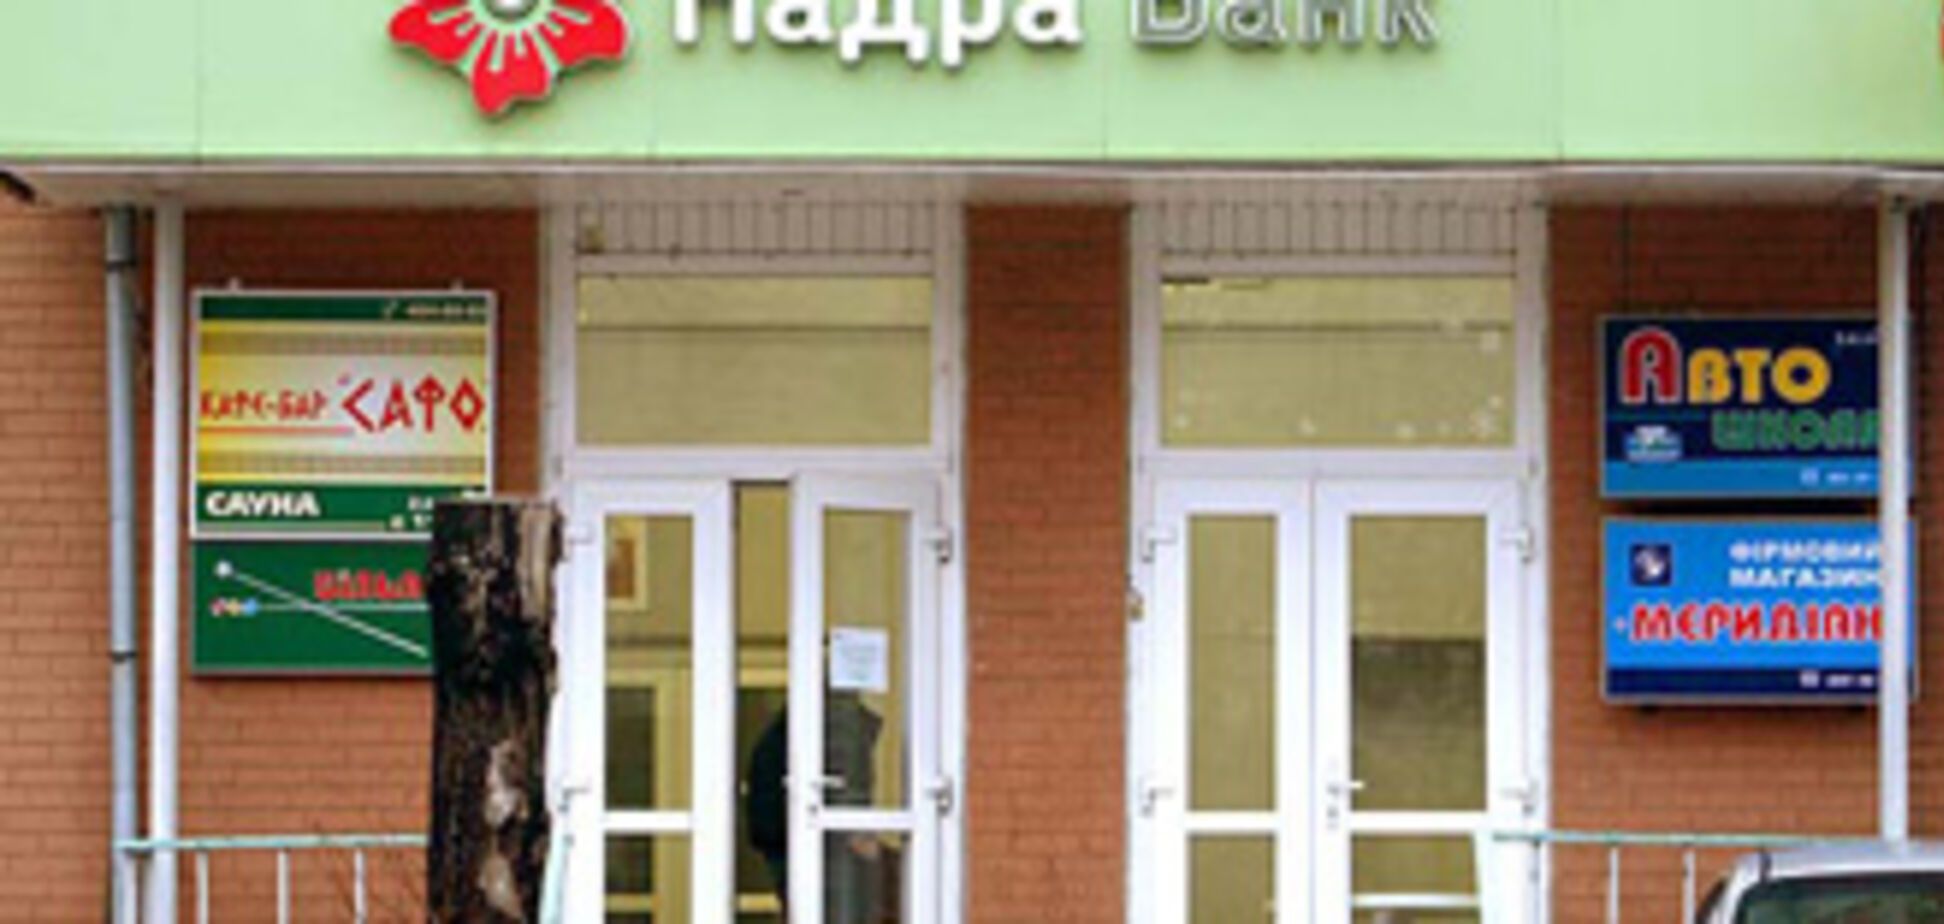 Банк 'Надра' возобновляет выплаты